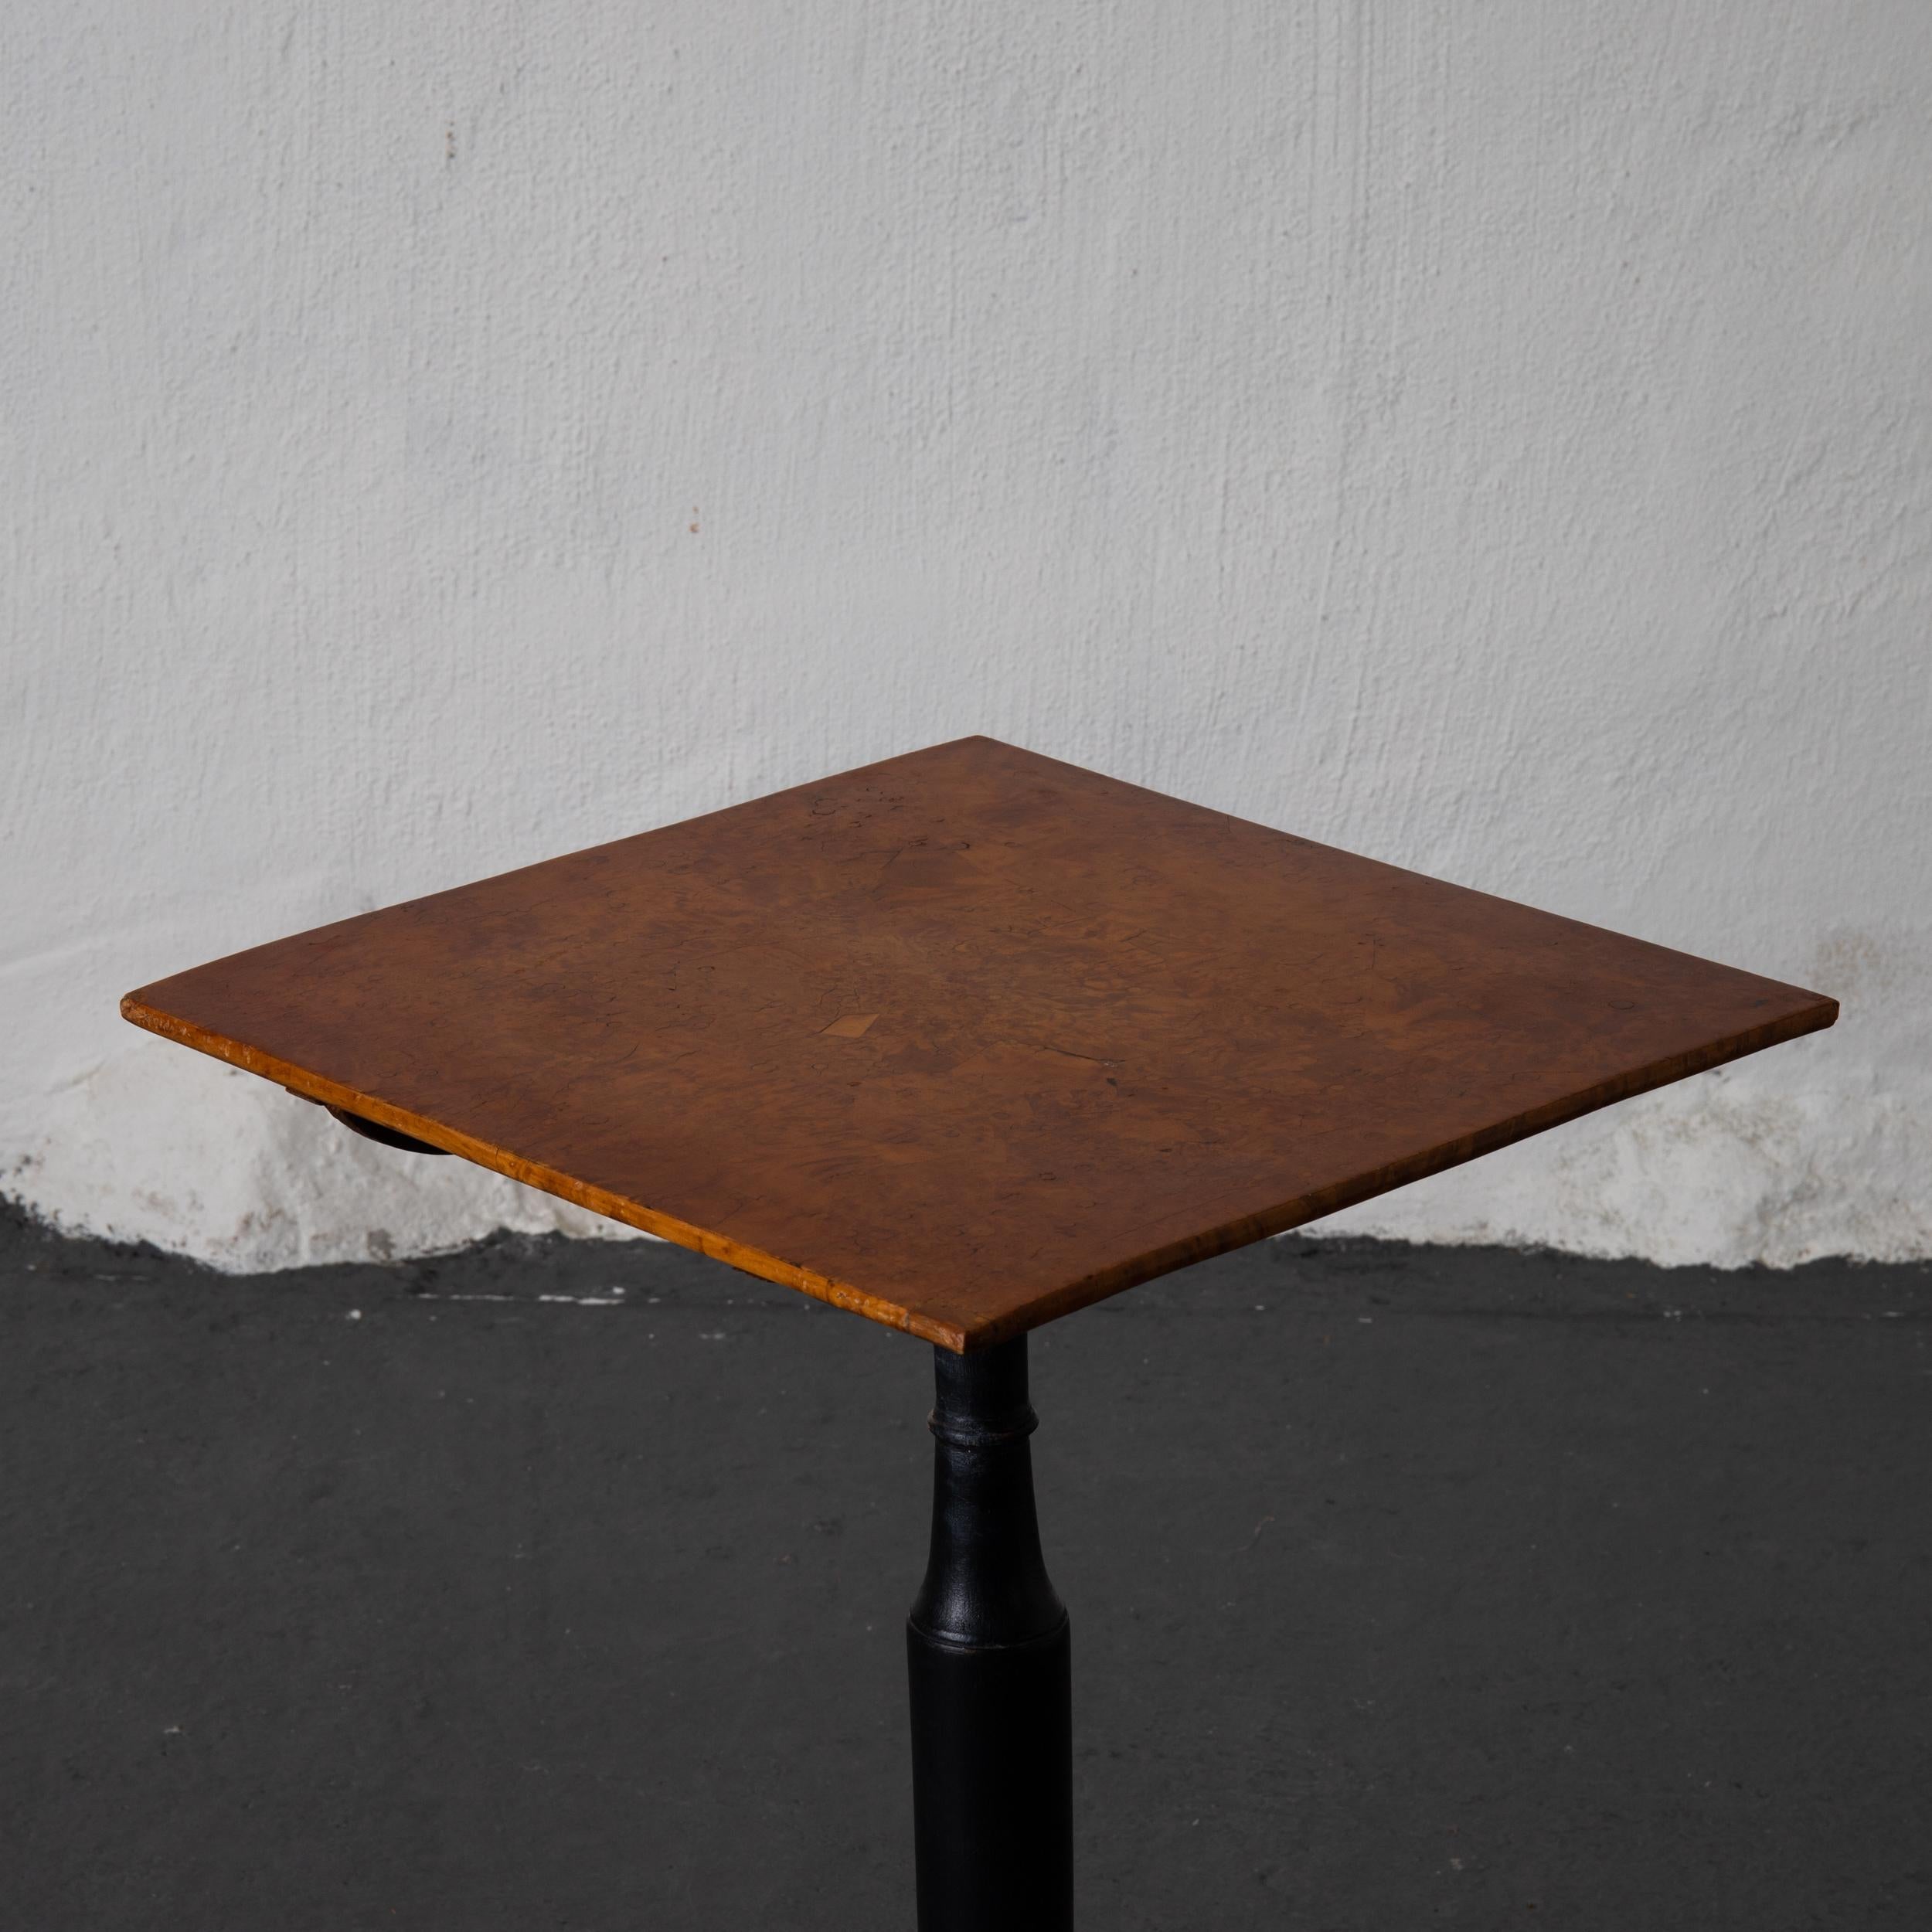 Table carrée à plateau basculant fabriquée au XVIIIe siècle à Mälardalen, en Suède. Un plateau carré réalisé en placage de racines d'aulne. Il repose sur un pied central en bois noirci sur une base tripode. 

  